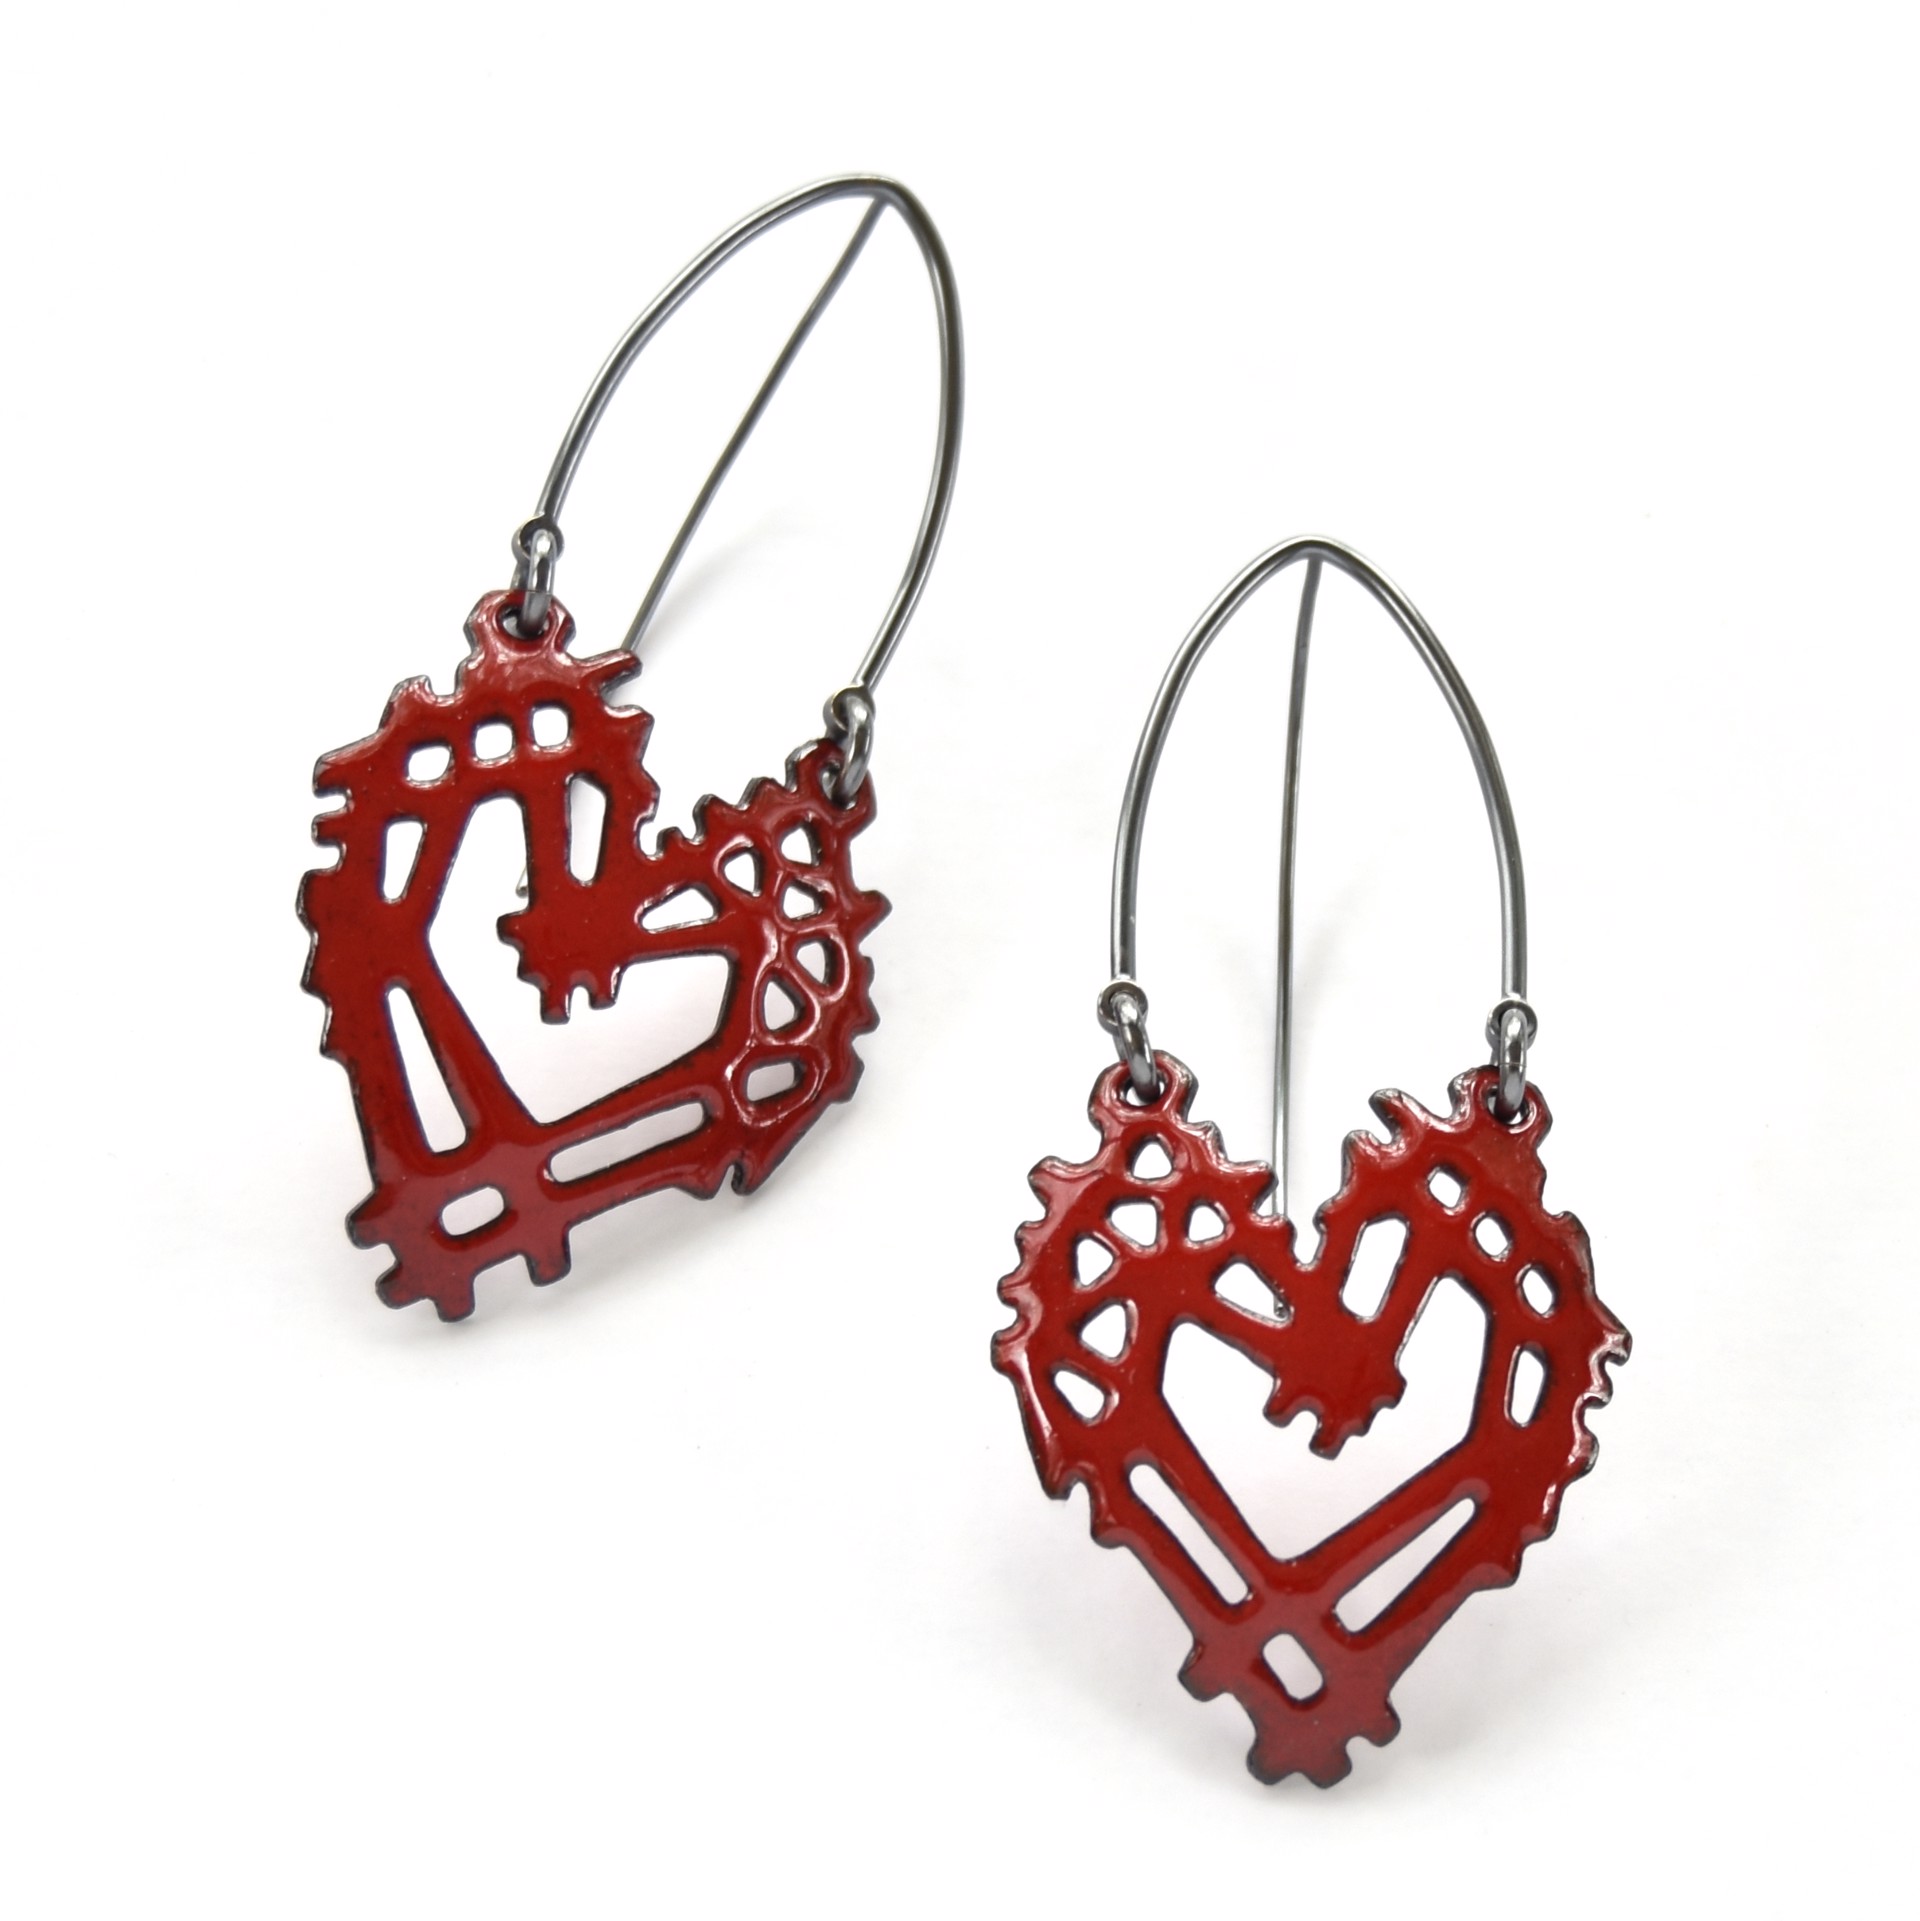 Stick & Stone Heart Earrings by Joanna Nealey